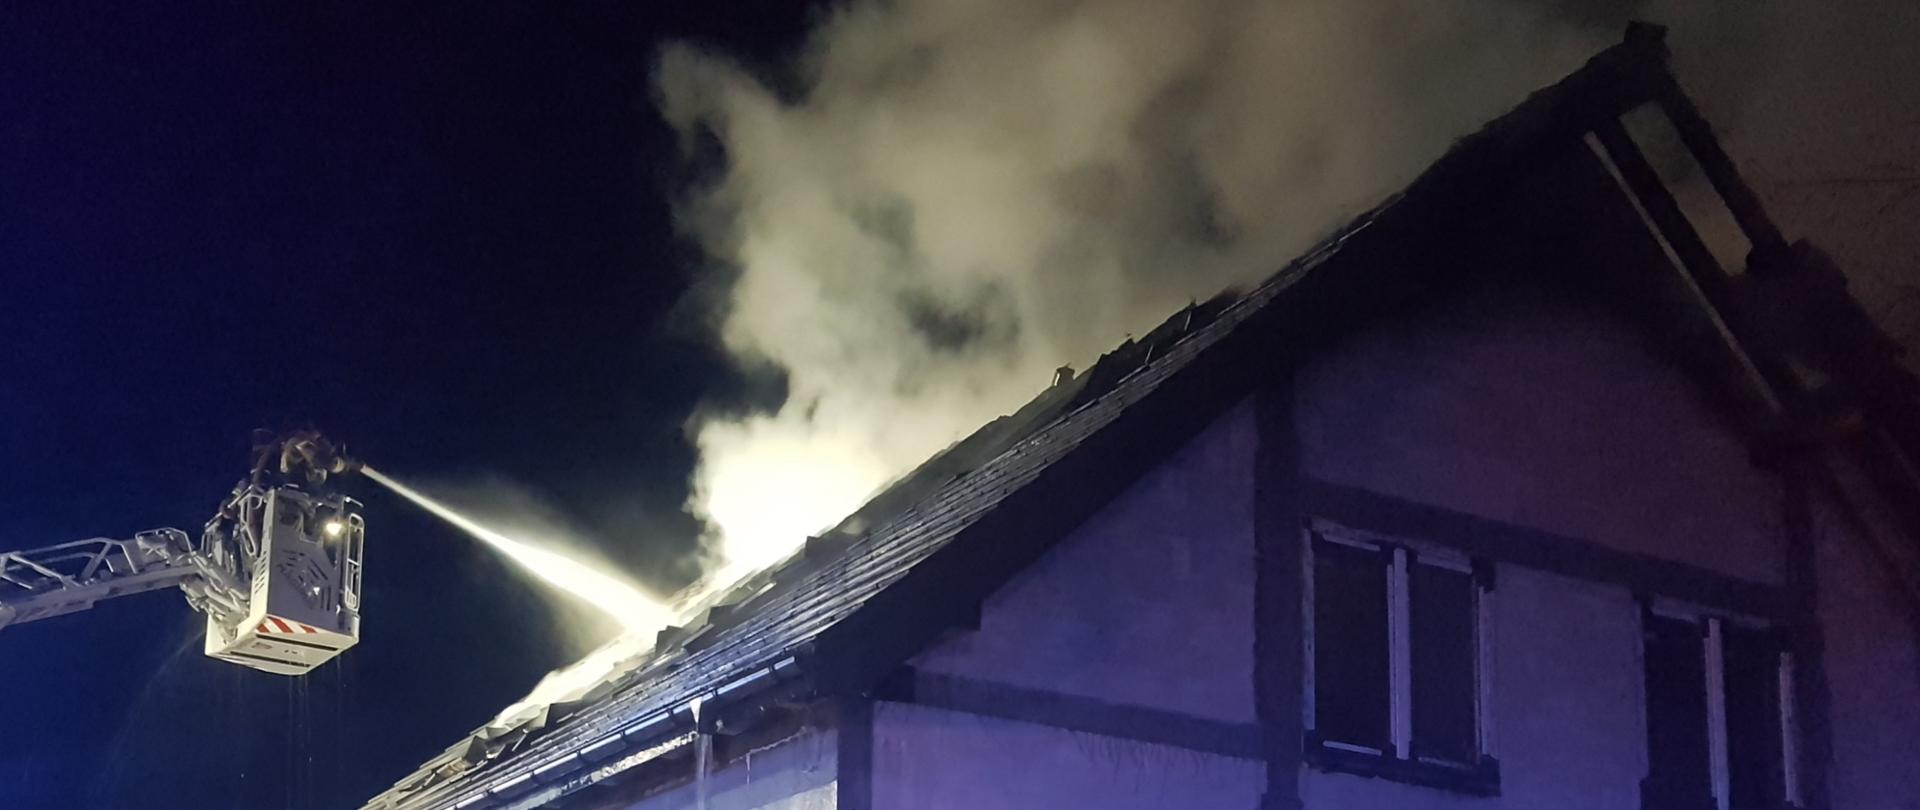 Nowo wybudowany dom mieszkalny. Z dachu wydobywa się dym. Nad budynkiem widoczny jest kosz podnośnika z którego strażacy gaszą pożar na dachu.